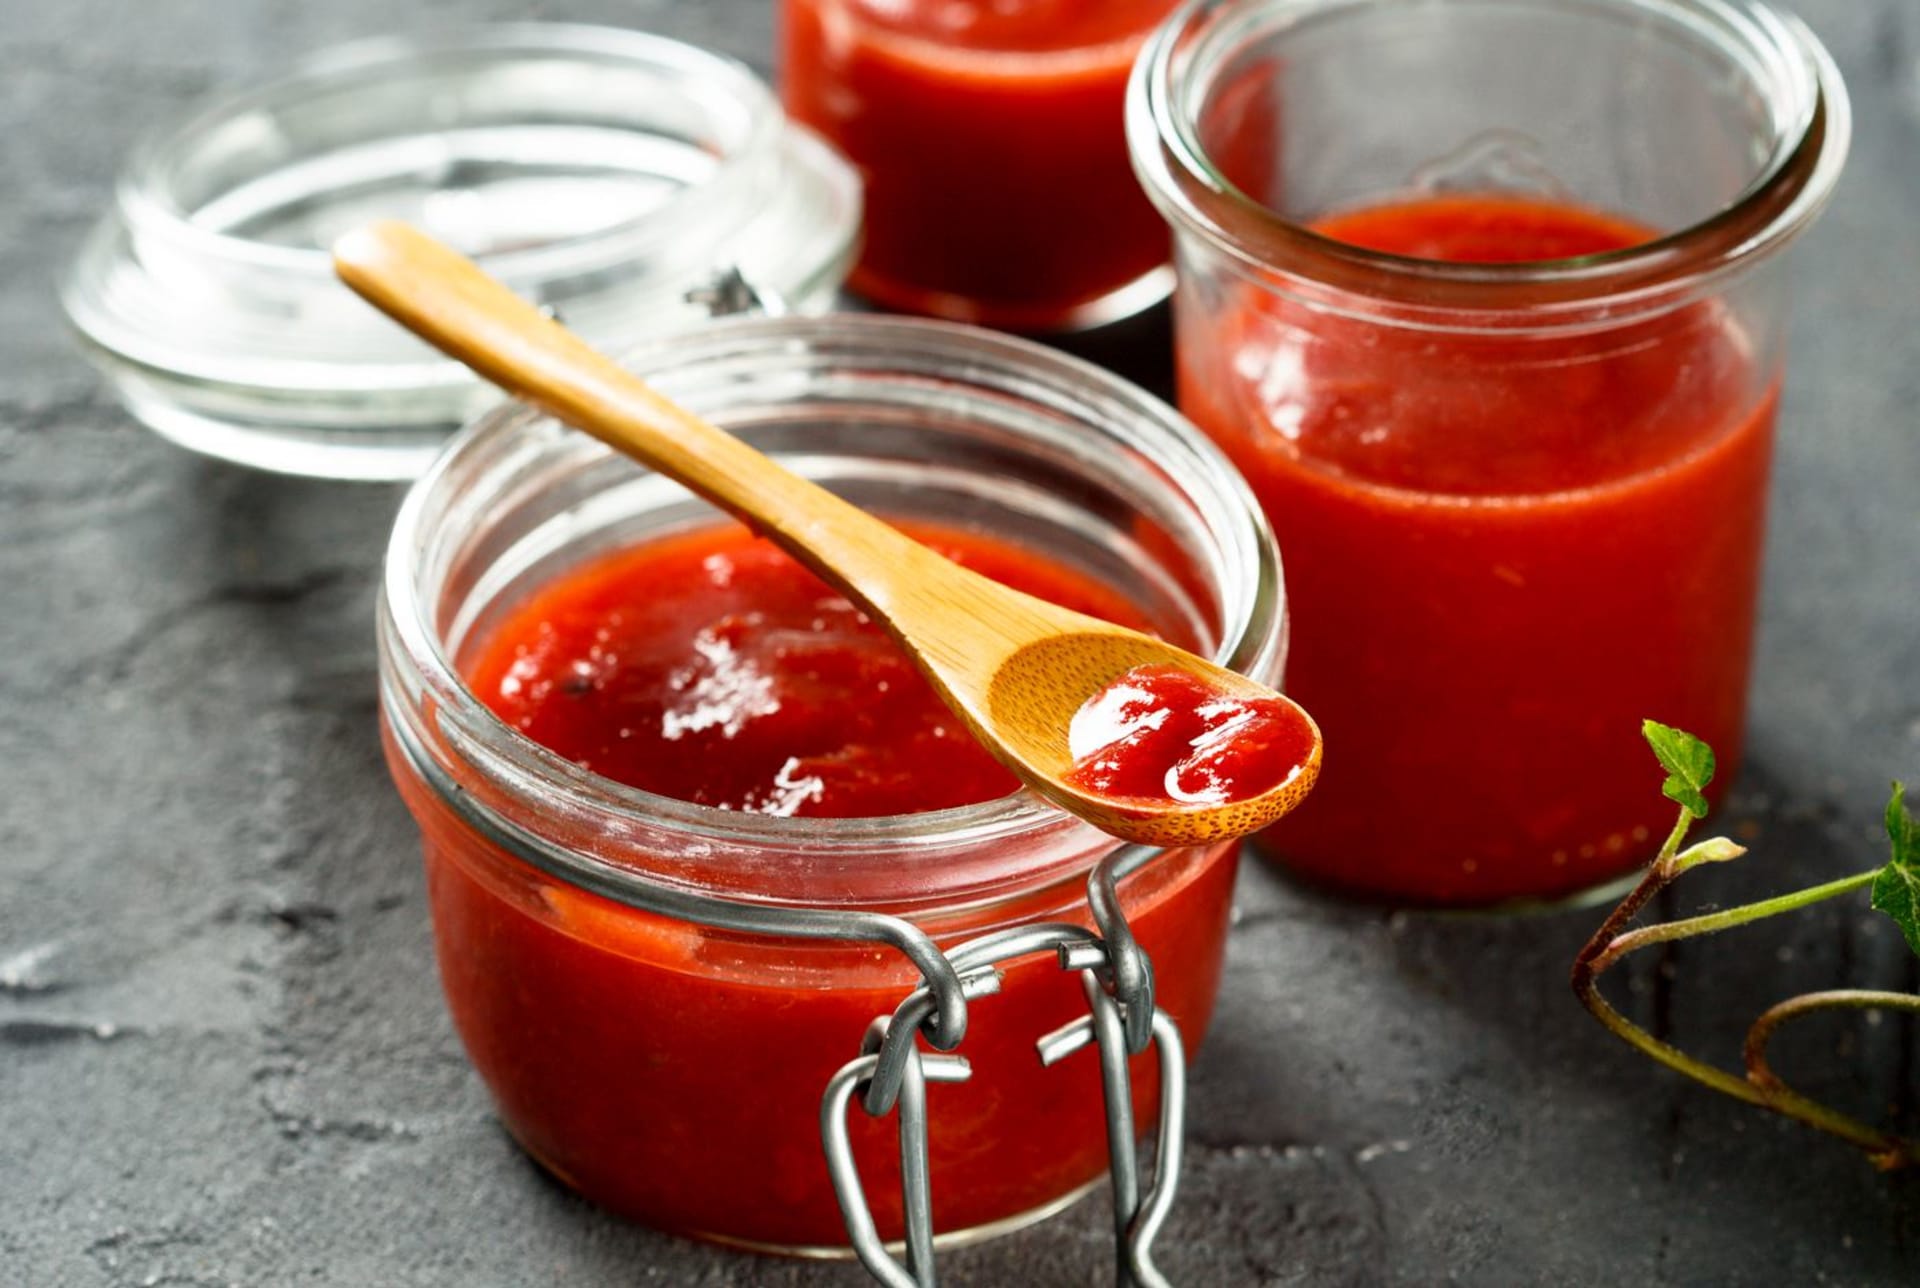 Domácí pečený kečup – jednoduchá příprava v troubě a výraznější chuť zralých rajčat